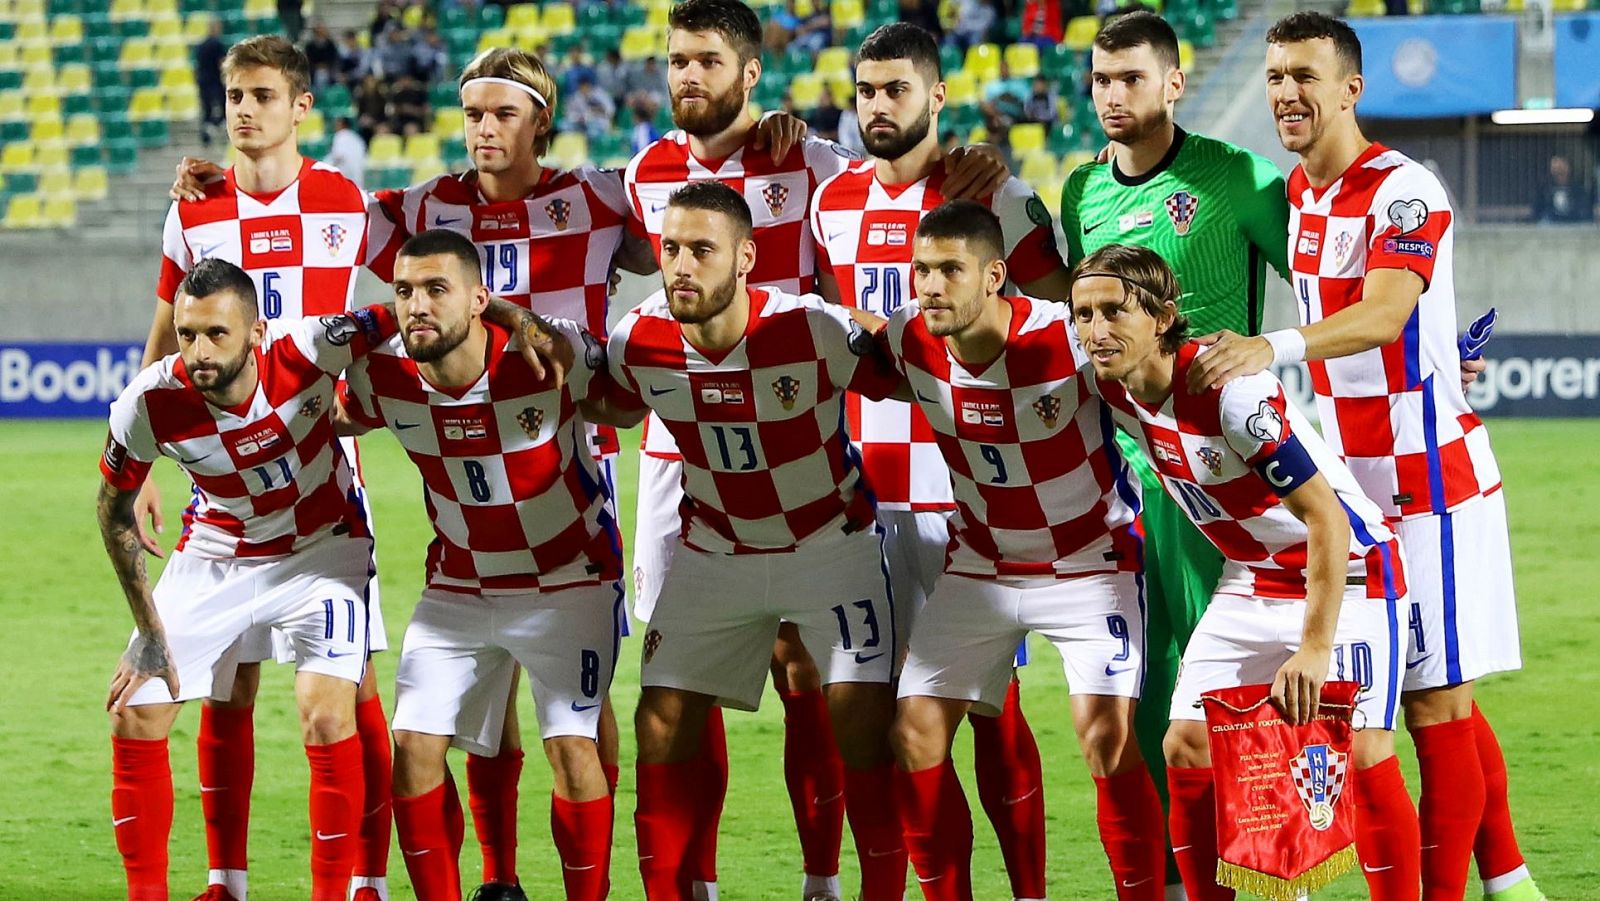 Jugadores de selección de fútbol de croacia